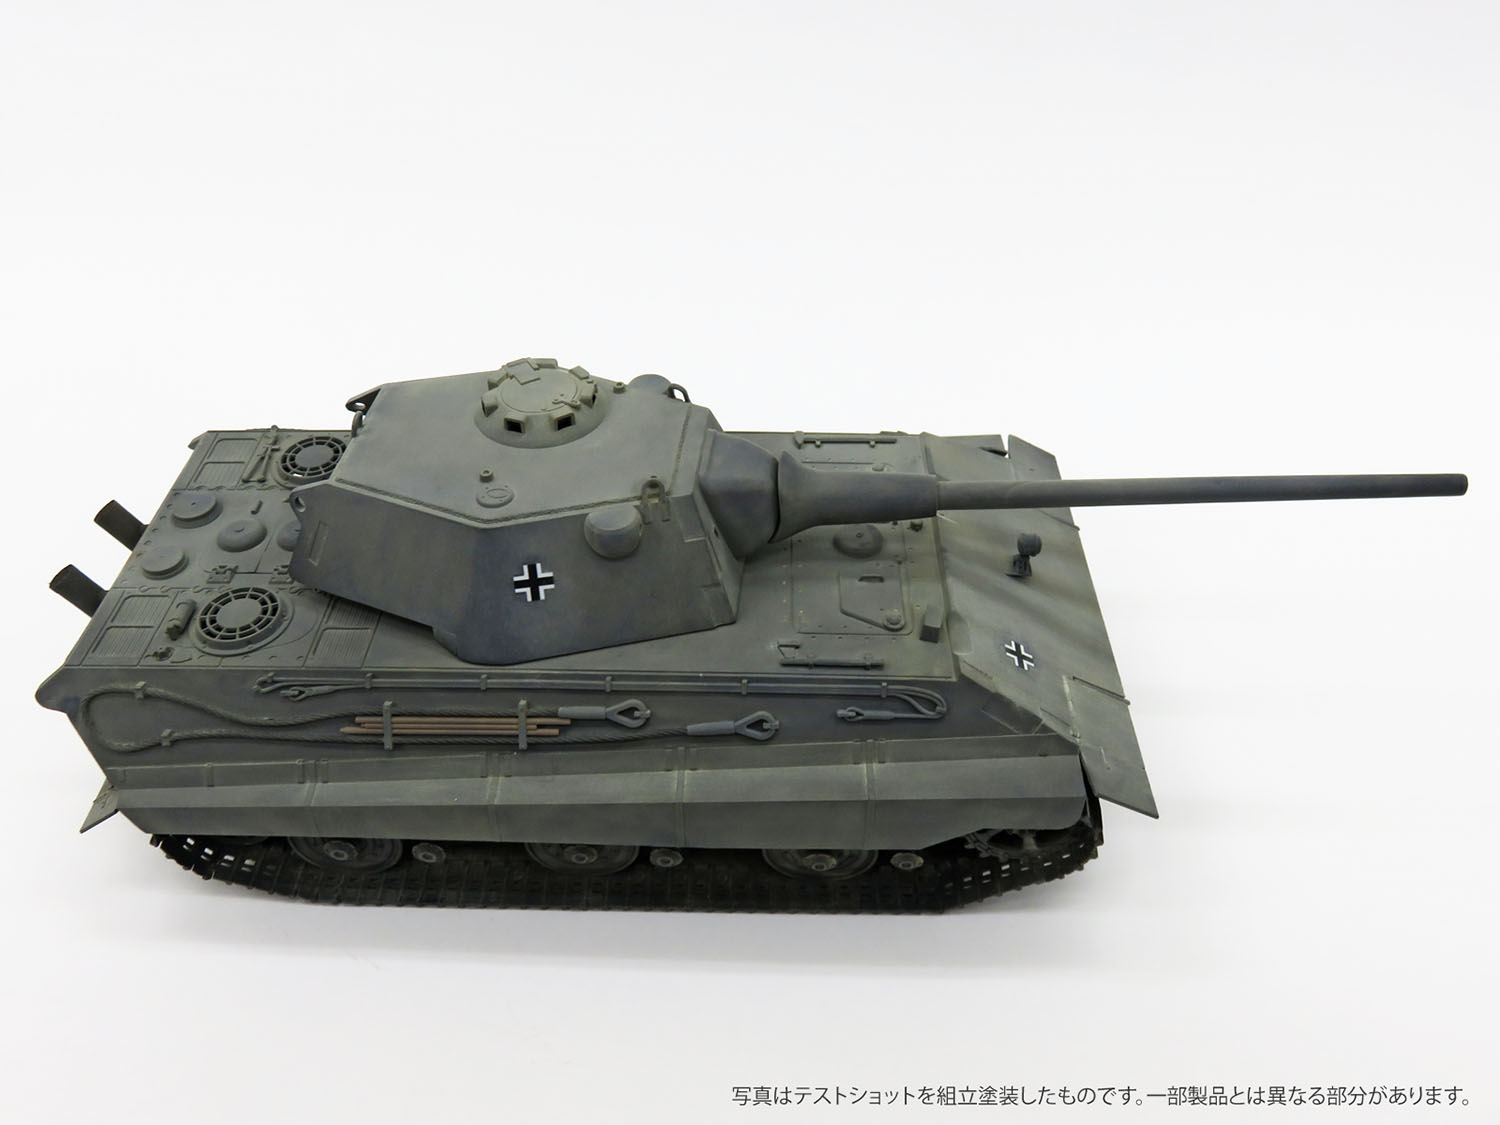 1/35 　E-50 Ausf.B 10.5cm KwK L/52�パンター�� - ウインドウを閉じる